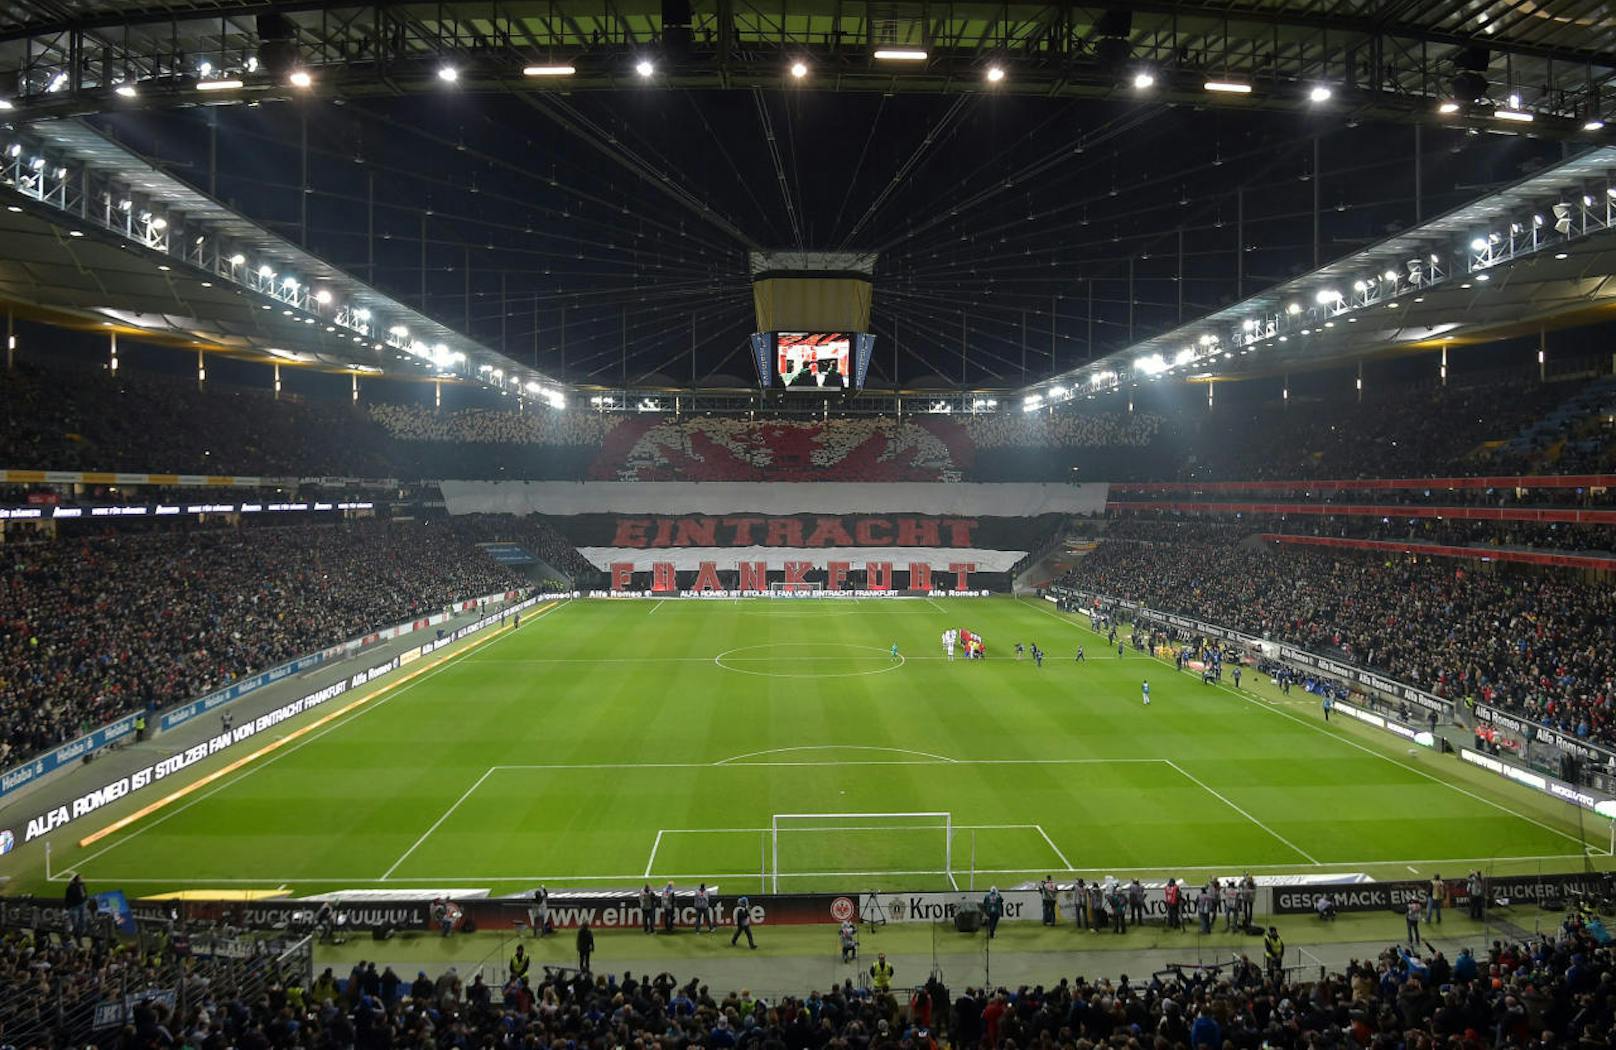 Für gewöhnlich bespielt Eintracht Frankfurt die Commerzbank-Arena. 2005 wurde sie umgebaut - und kann seitdem bei Regen überdacht werden. 51.500 Zuschauer dürfen hinein.